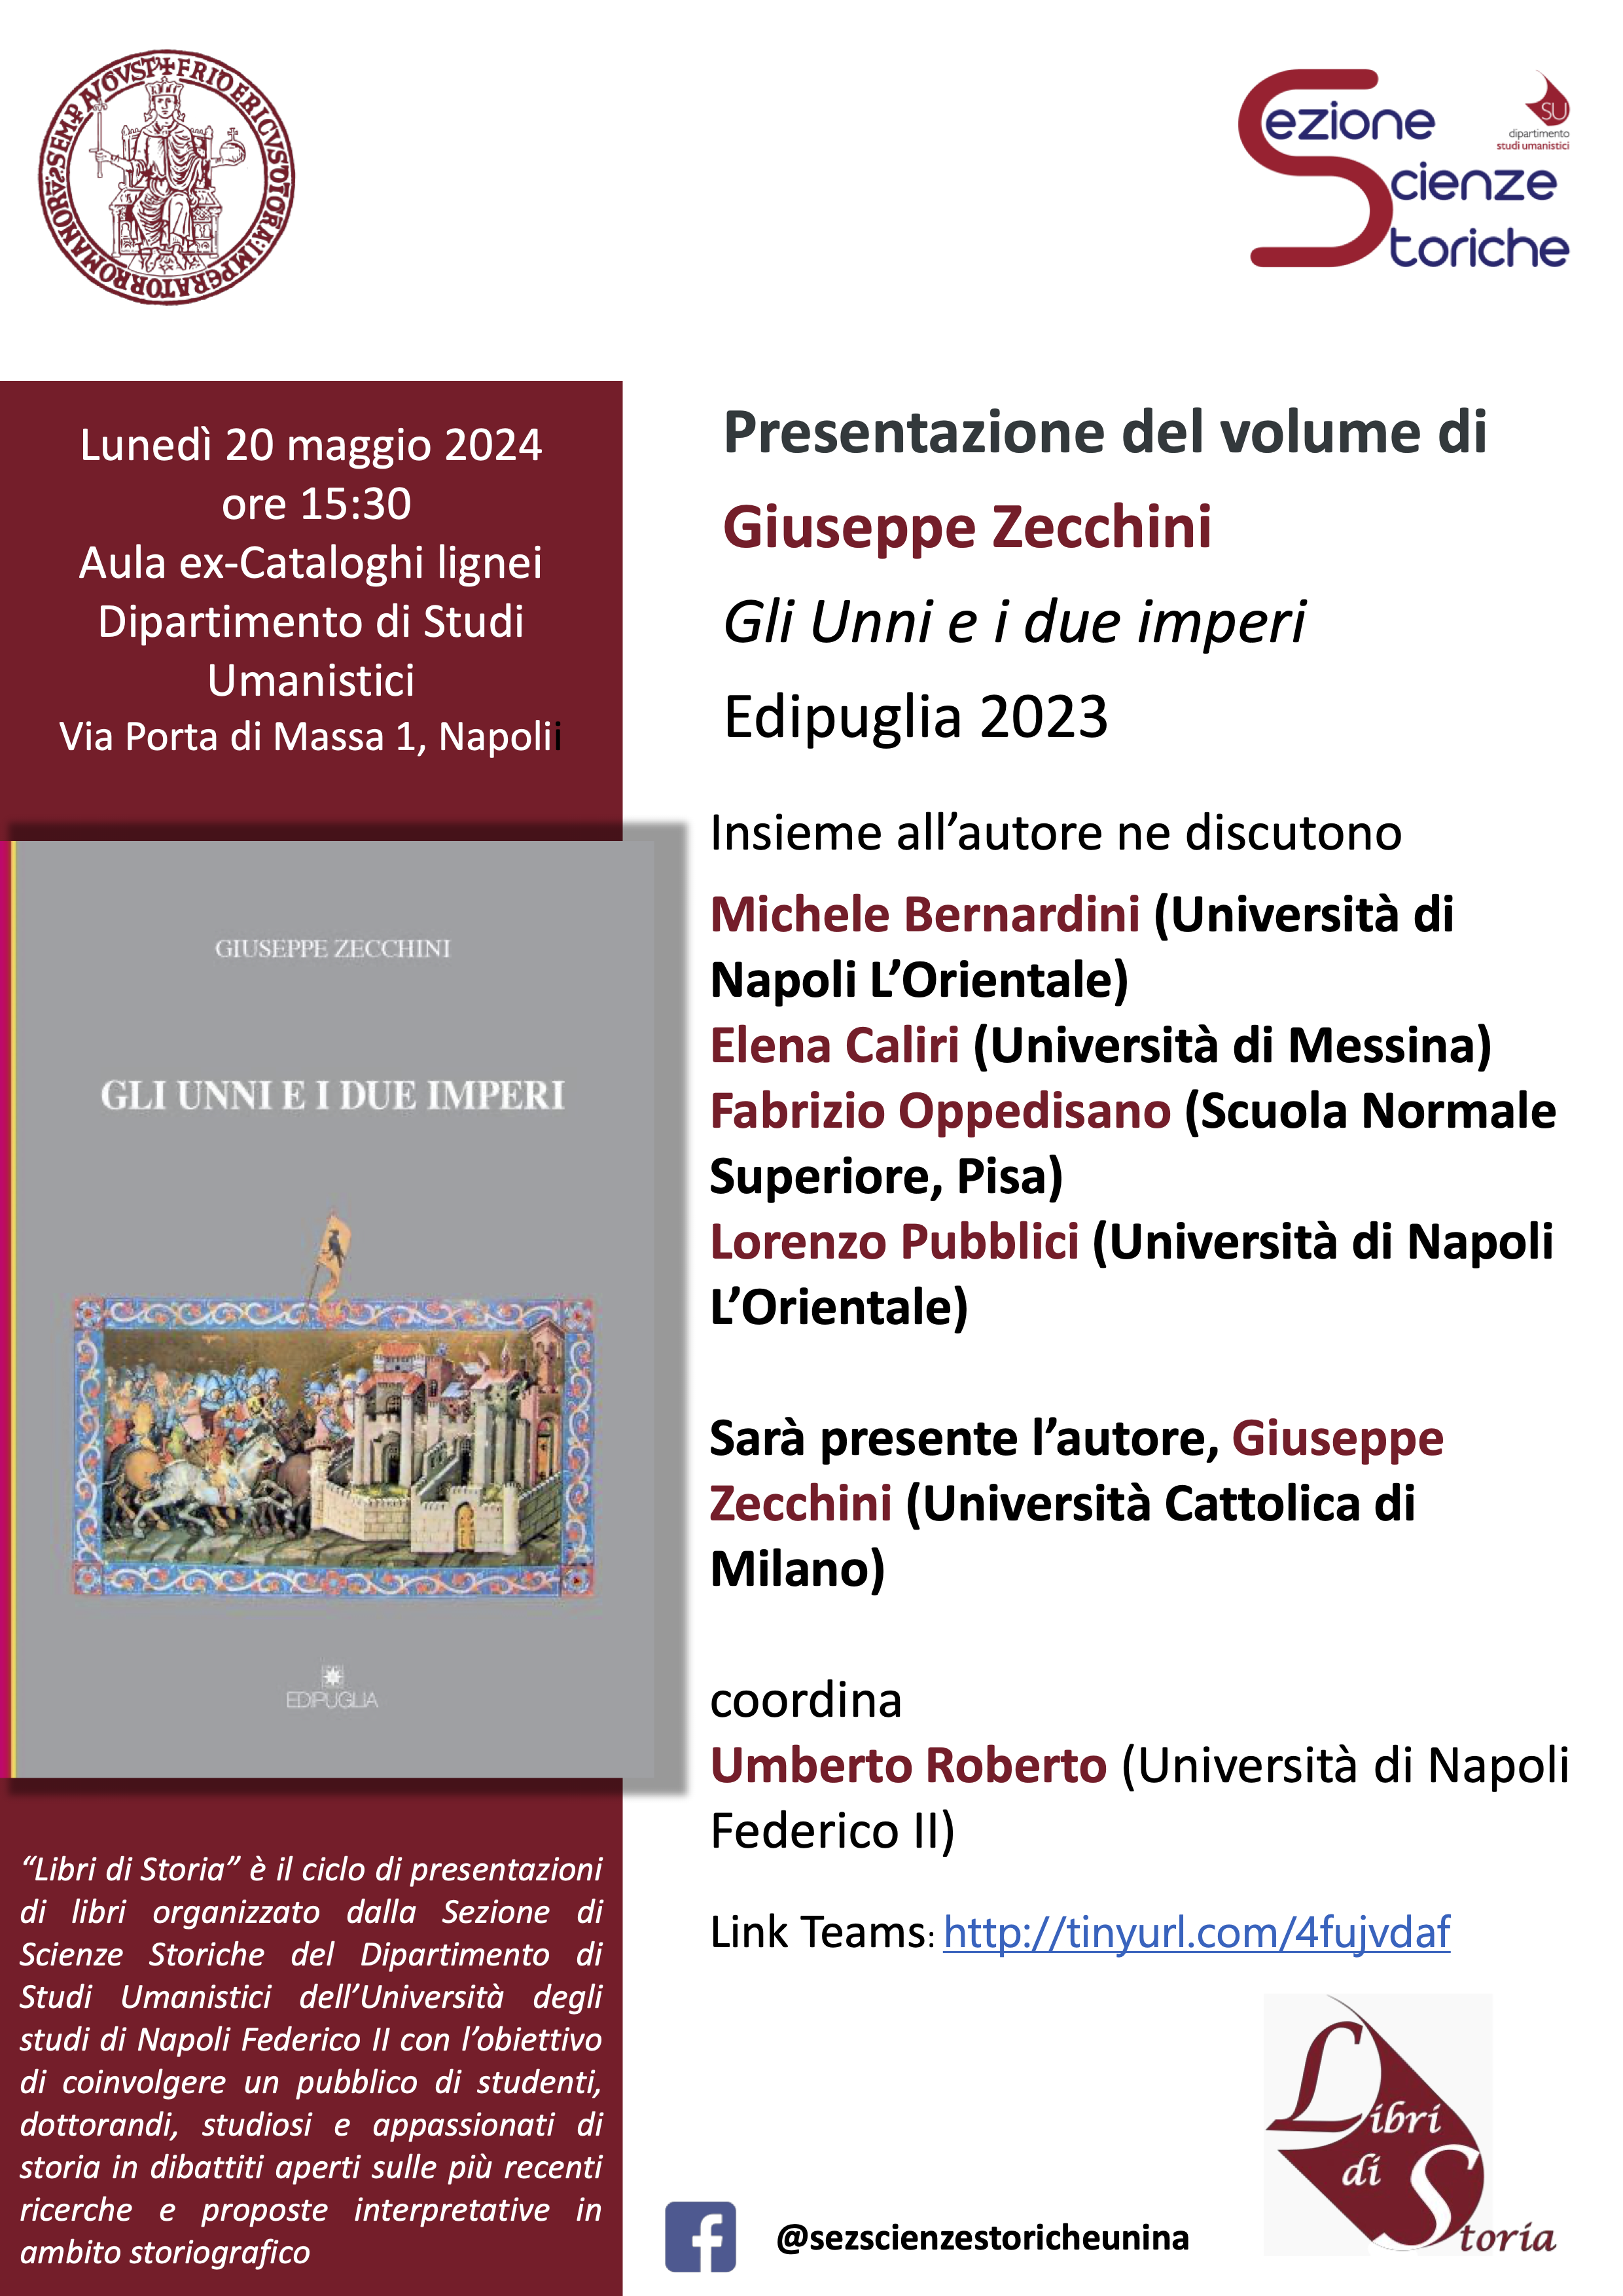 Presentazione del volume di Giuseppe Zecchini, Gli Unni e i due imperi